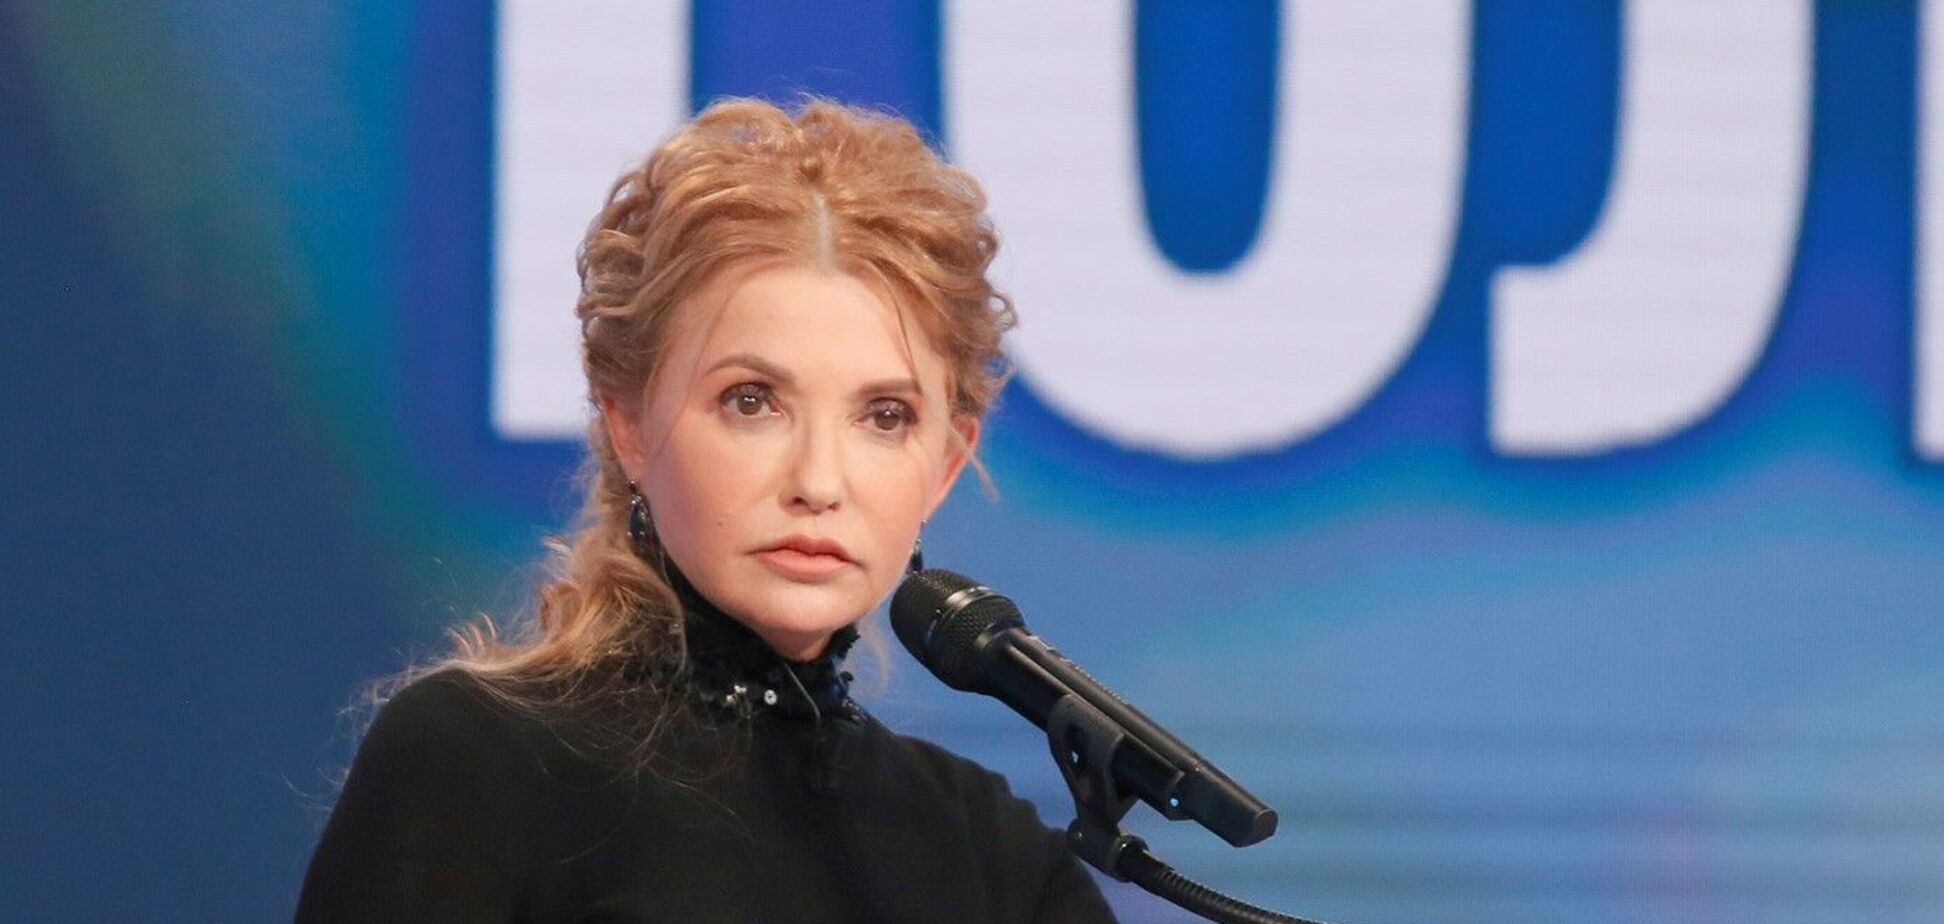 'Батькивщина' Тимошенко единственная реальная альтернатива власти 'слуг народа', – Карасев